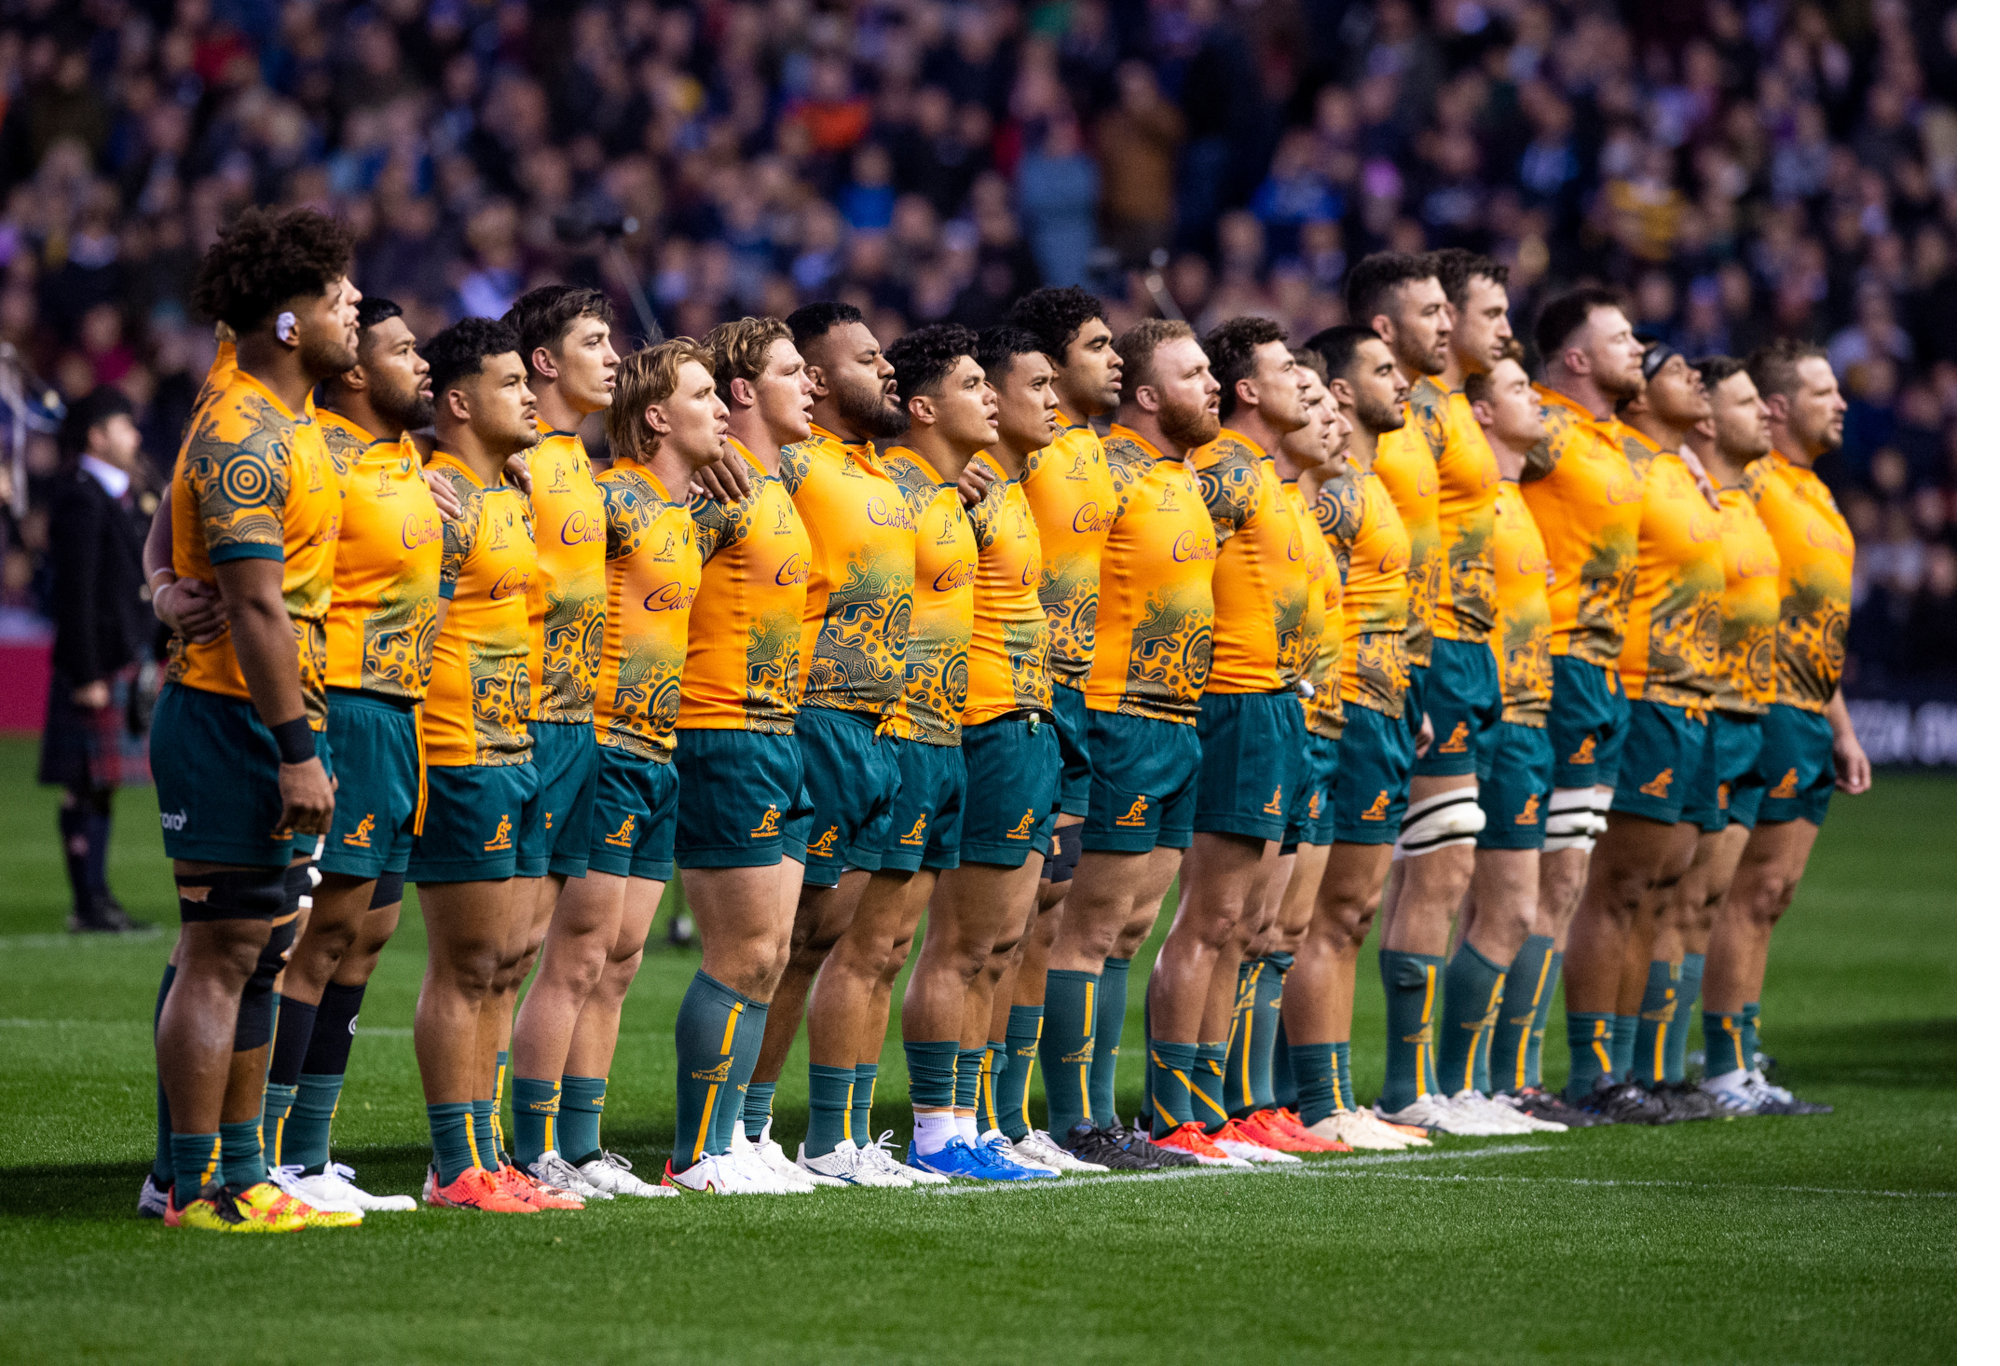 Australian team sing the Aussie national Anthem